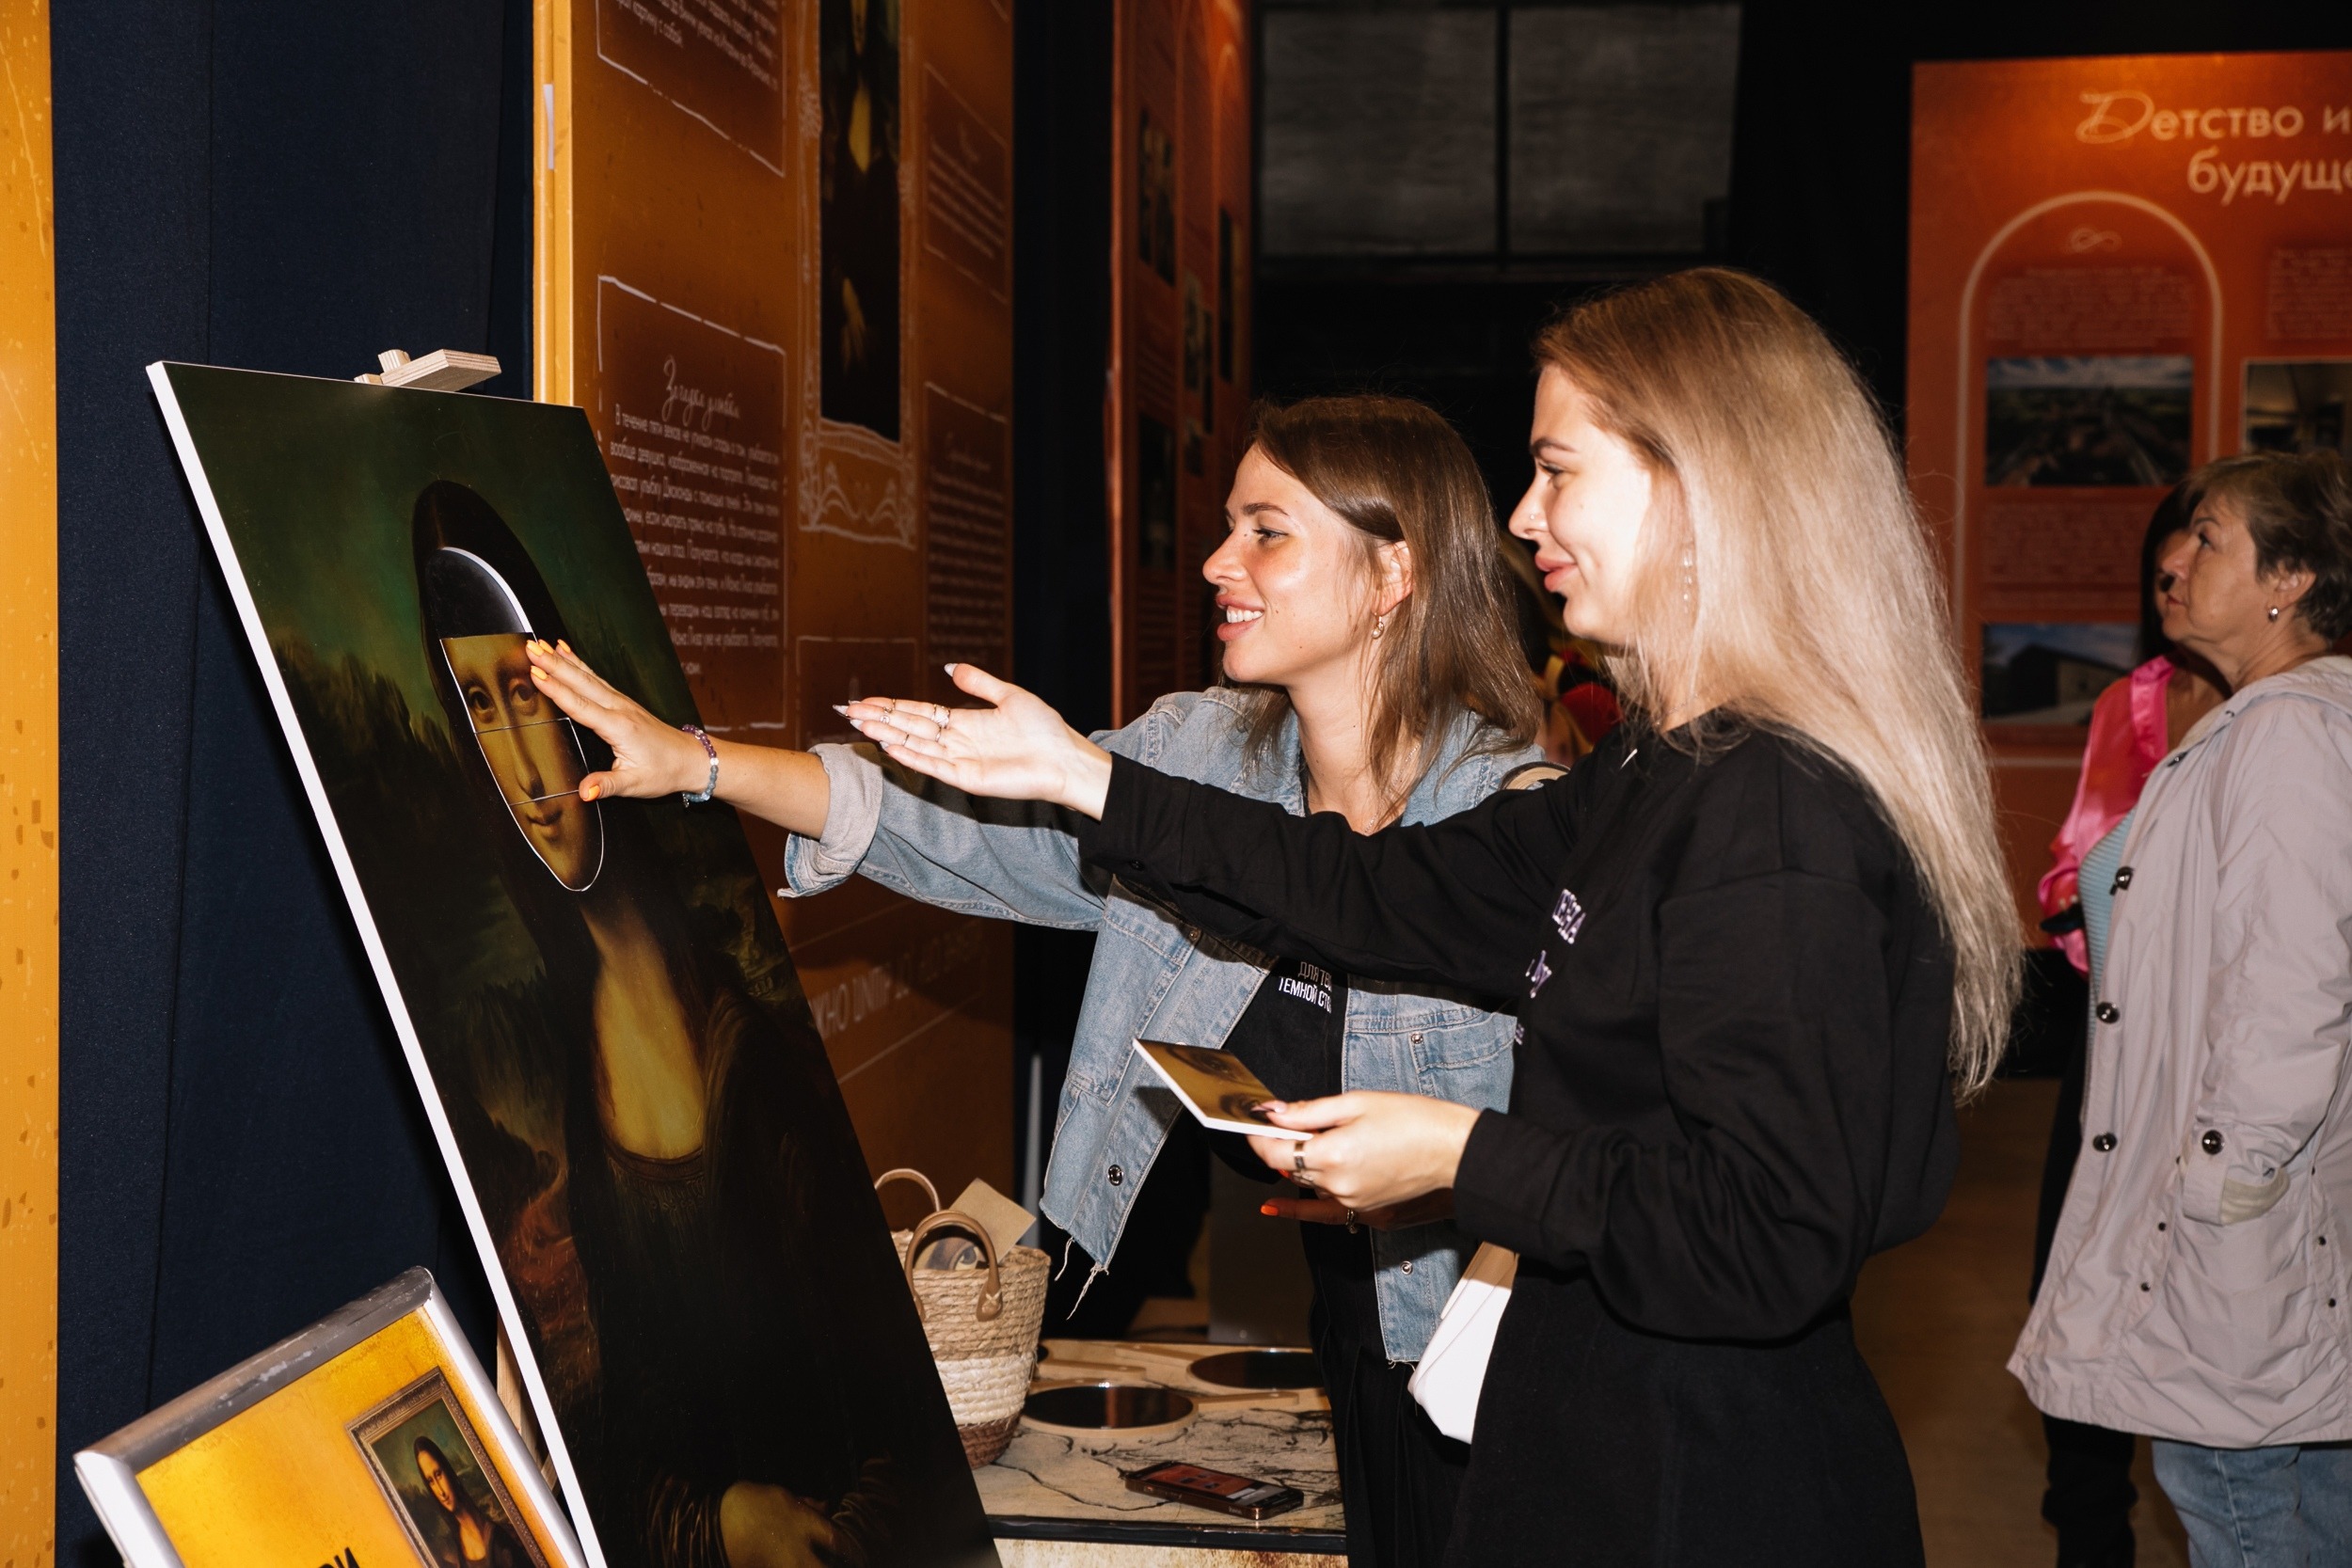 Выставка «Ожившие полотна Леонардо да Винчи: Тайна Моны Лизы» в Екатеринбурге продлится до 3 декабря, но ее уже посетили 6 тыс. человек